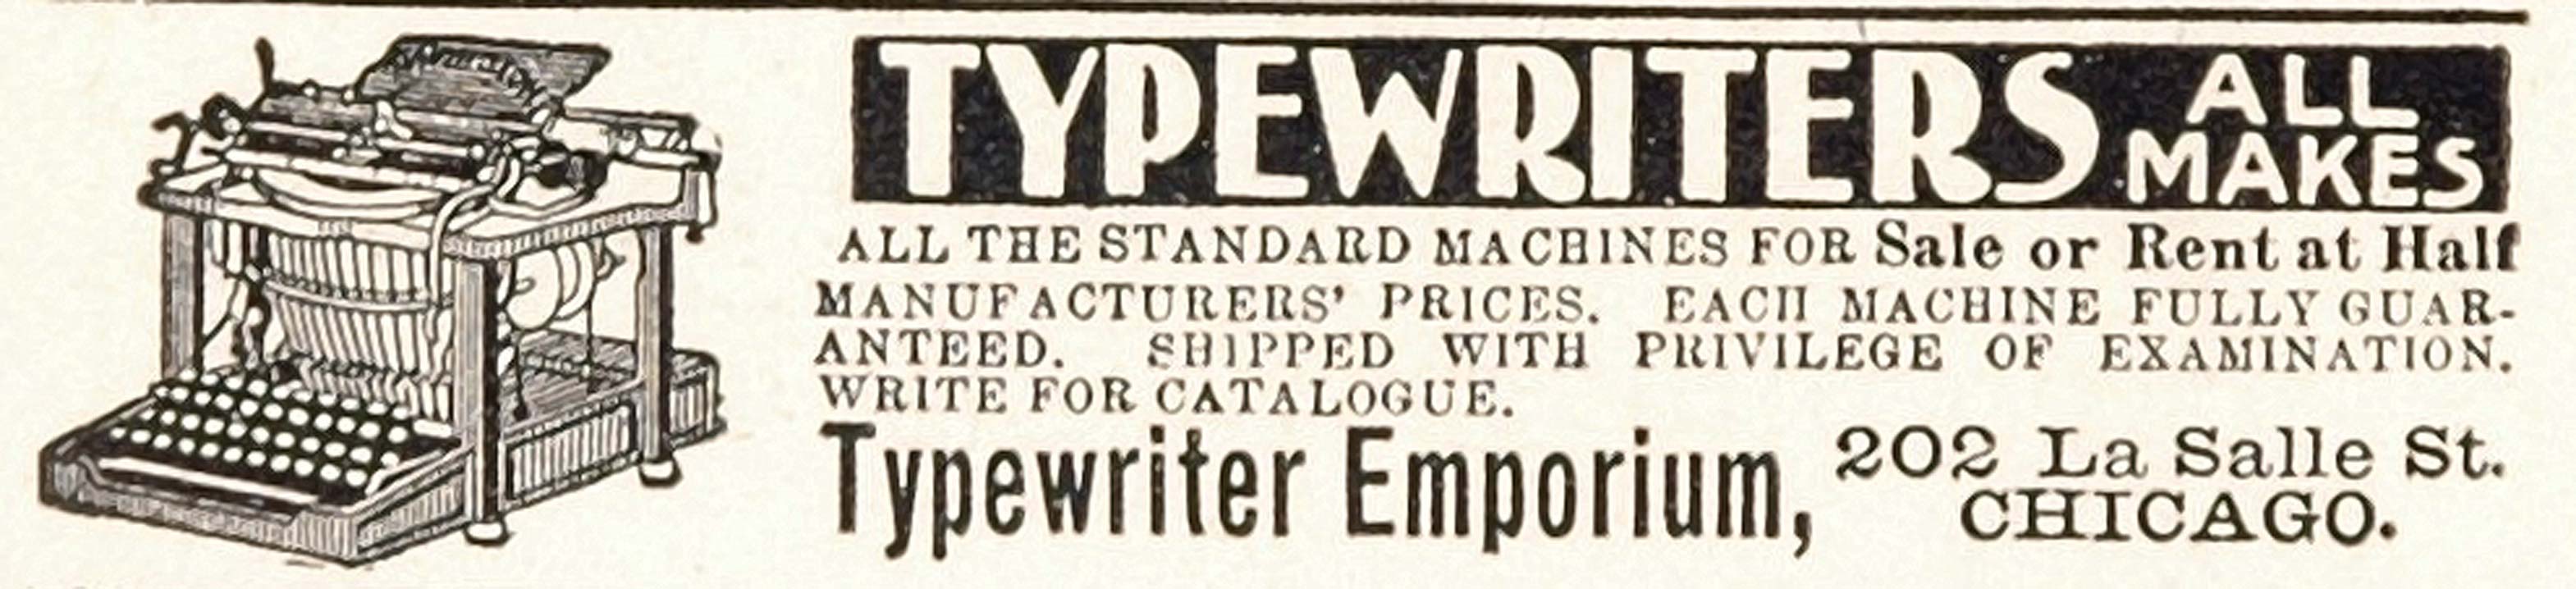 1902 Original Print Ad Typewriter Emporium Chicago - ORIGINAL ADVERTISING